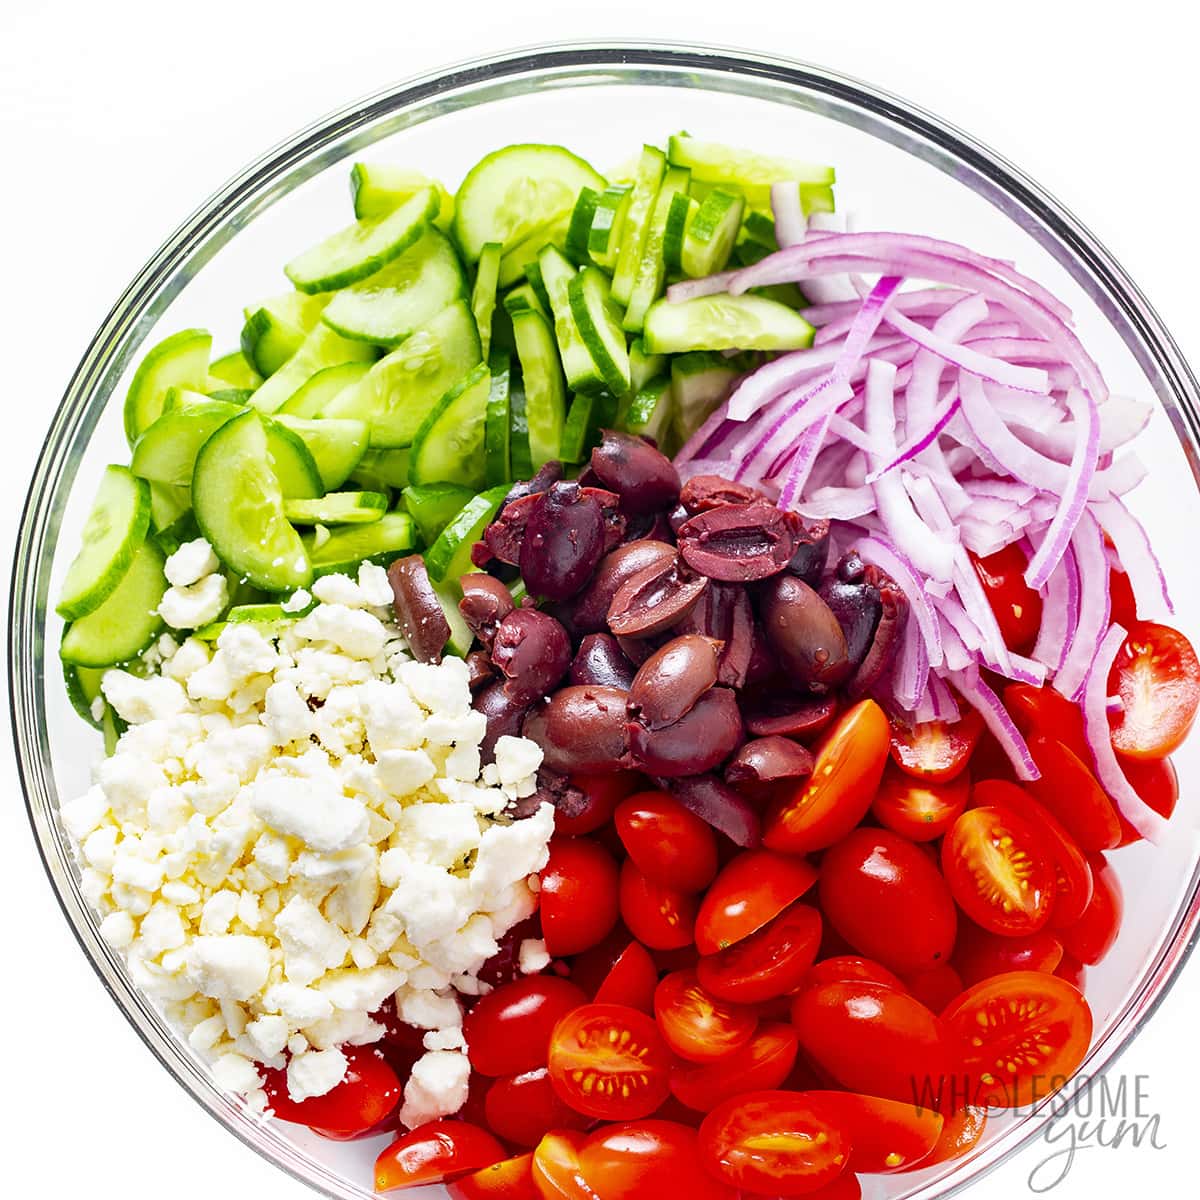 Greek salad ingredients in a large bowl.